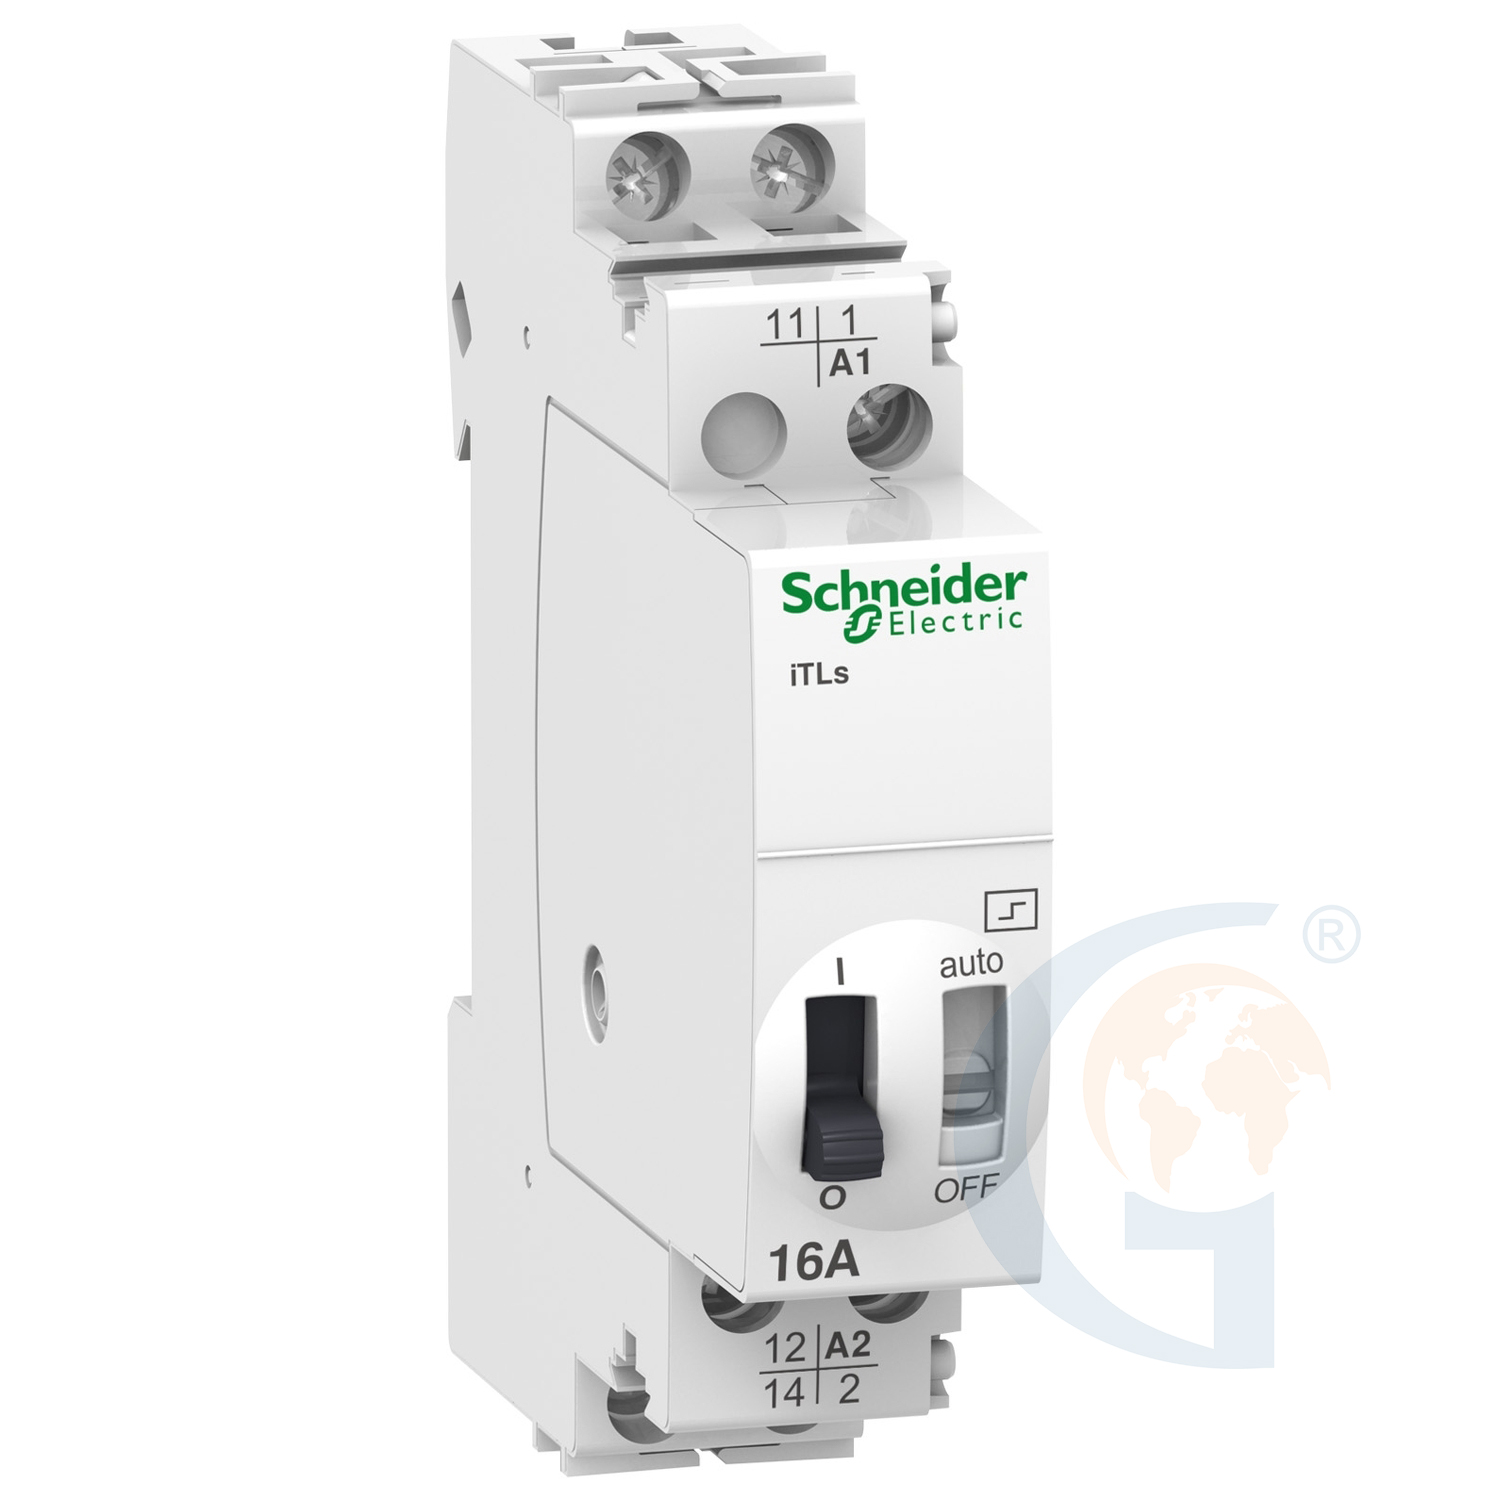 Schneider Electric A9C32811 IMPULSE RELAY ITLS – 1P – 1NO – 16A – COIL 110 VDC – 230…240 VAC 50/60HZ https://gesrepair.com/wp-content/uploads/2020/Schneider/Schneider_Electric_A9C32811_.jpg